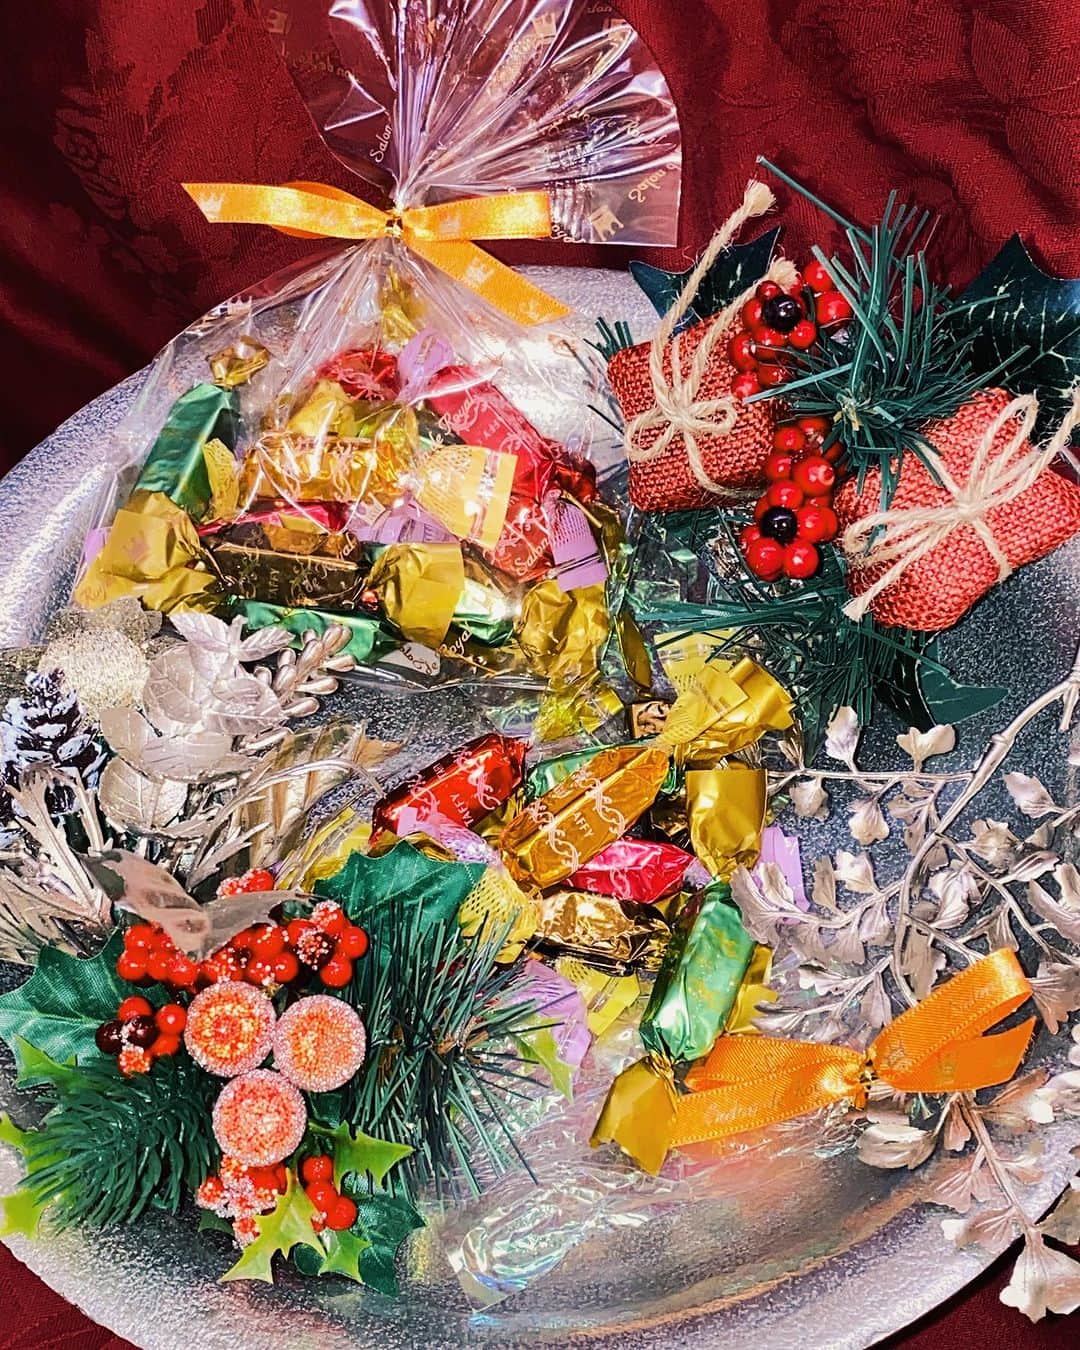 Salon de Royal Kyotoのインスタグラム：「皆様こんにちは サロンドロワイヤル京都本店でございます🫖❄️ ・ ・ 12月になり街も華やいできましたね🪅 クリスマスに向け、サロンドロワイヤル京都店に  ・ 🎄【タフィーキャンディ】🎄 イギリス発祥のナッツとバターをふんだんに使用した砂糖菓子です🍬 ・コーヒー ・キャラメル ・ピーナッツ ・ショコラ ・白胡麻 の5種フレーバーをお楽しみ頂けます🌟  ちょっとした贈り物におひとついかがでしょうか💭  【営業時間】 11:00〜19:00(L.O.18:00) ・ ・ 本日も皆様のご来店を心よりお待ちしております☕️ ・ ・ #サロンドロワイヤル京都店 #salonderoyalkyoto#サロンドロワイヤル京都本店#サロンドロワイヤル京都#サロンドロワイヤル#salonderoyal#日本#japan#京都#kyoto#京都スイーツ#京都カフェ#ボンボンショコラ#チョコレート #チョコ #ショコラ #chocolate #chocolat #chocolatier#salonderoyal#京都市役所前カフェ#三条カフェ#川床席#鴨川沿い#鴨川カフェ#納涼床#クリスマス　#タフィーキャンディ」